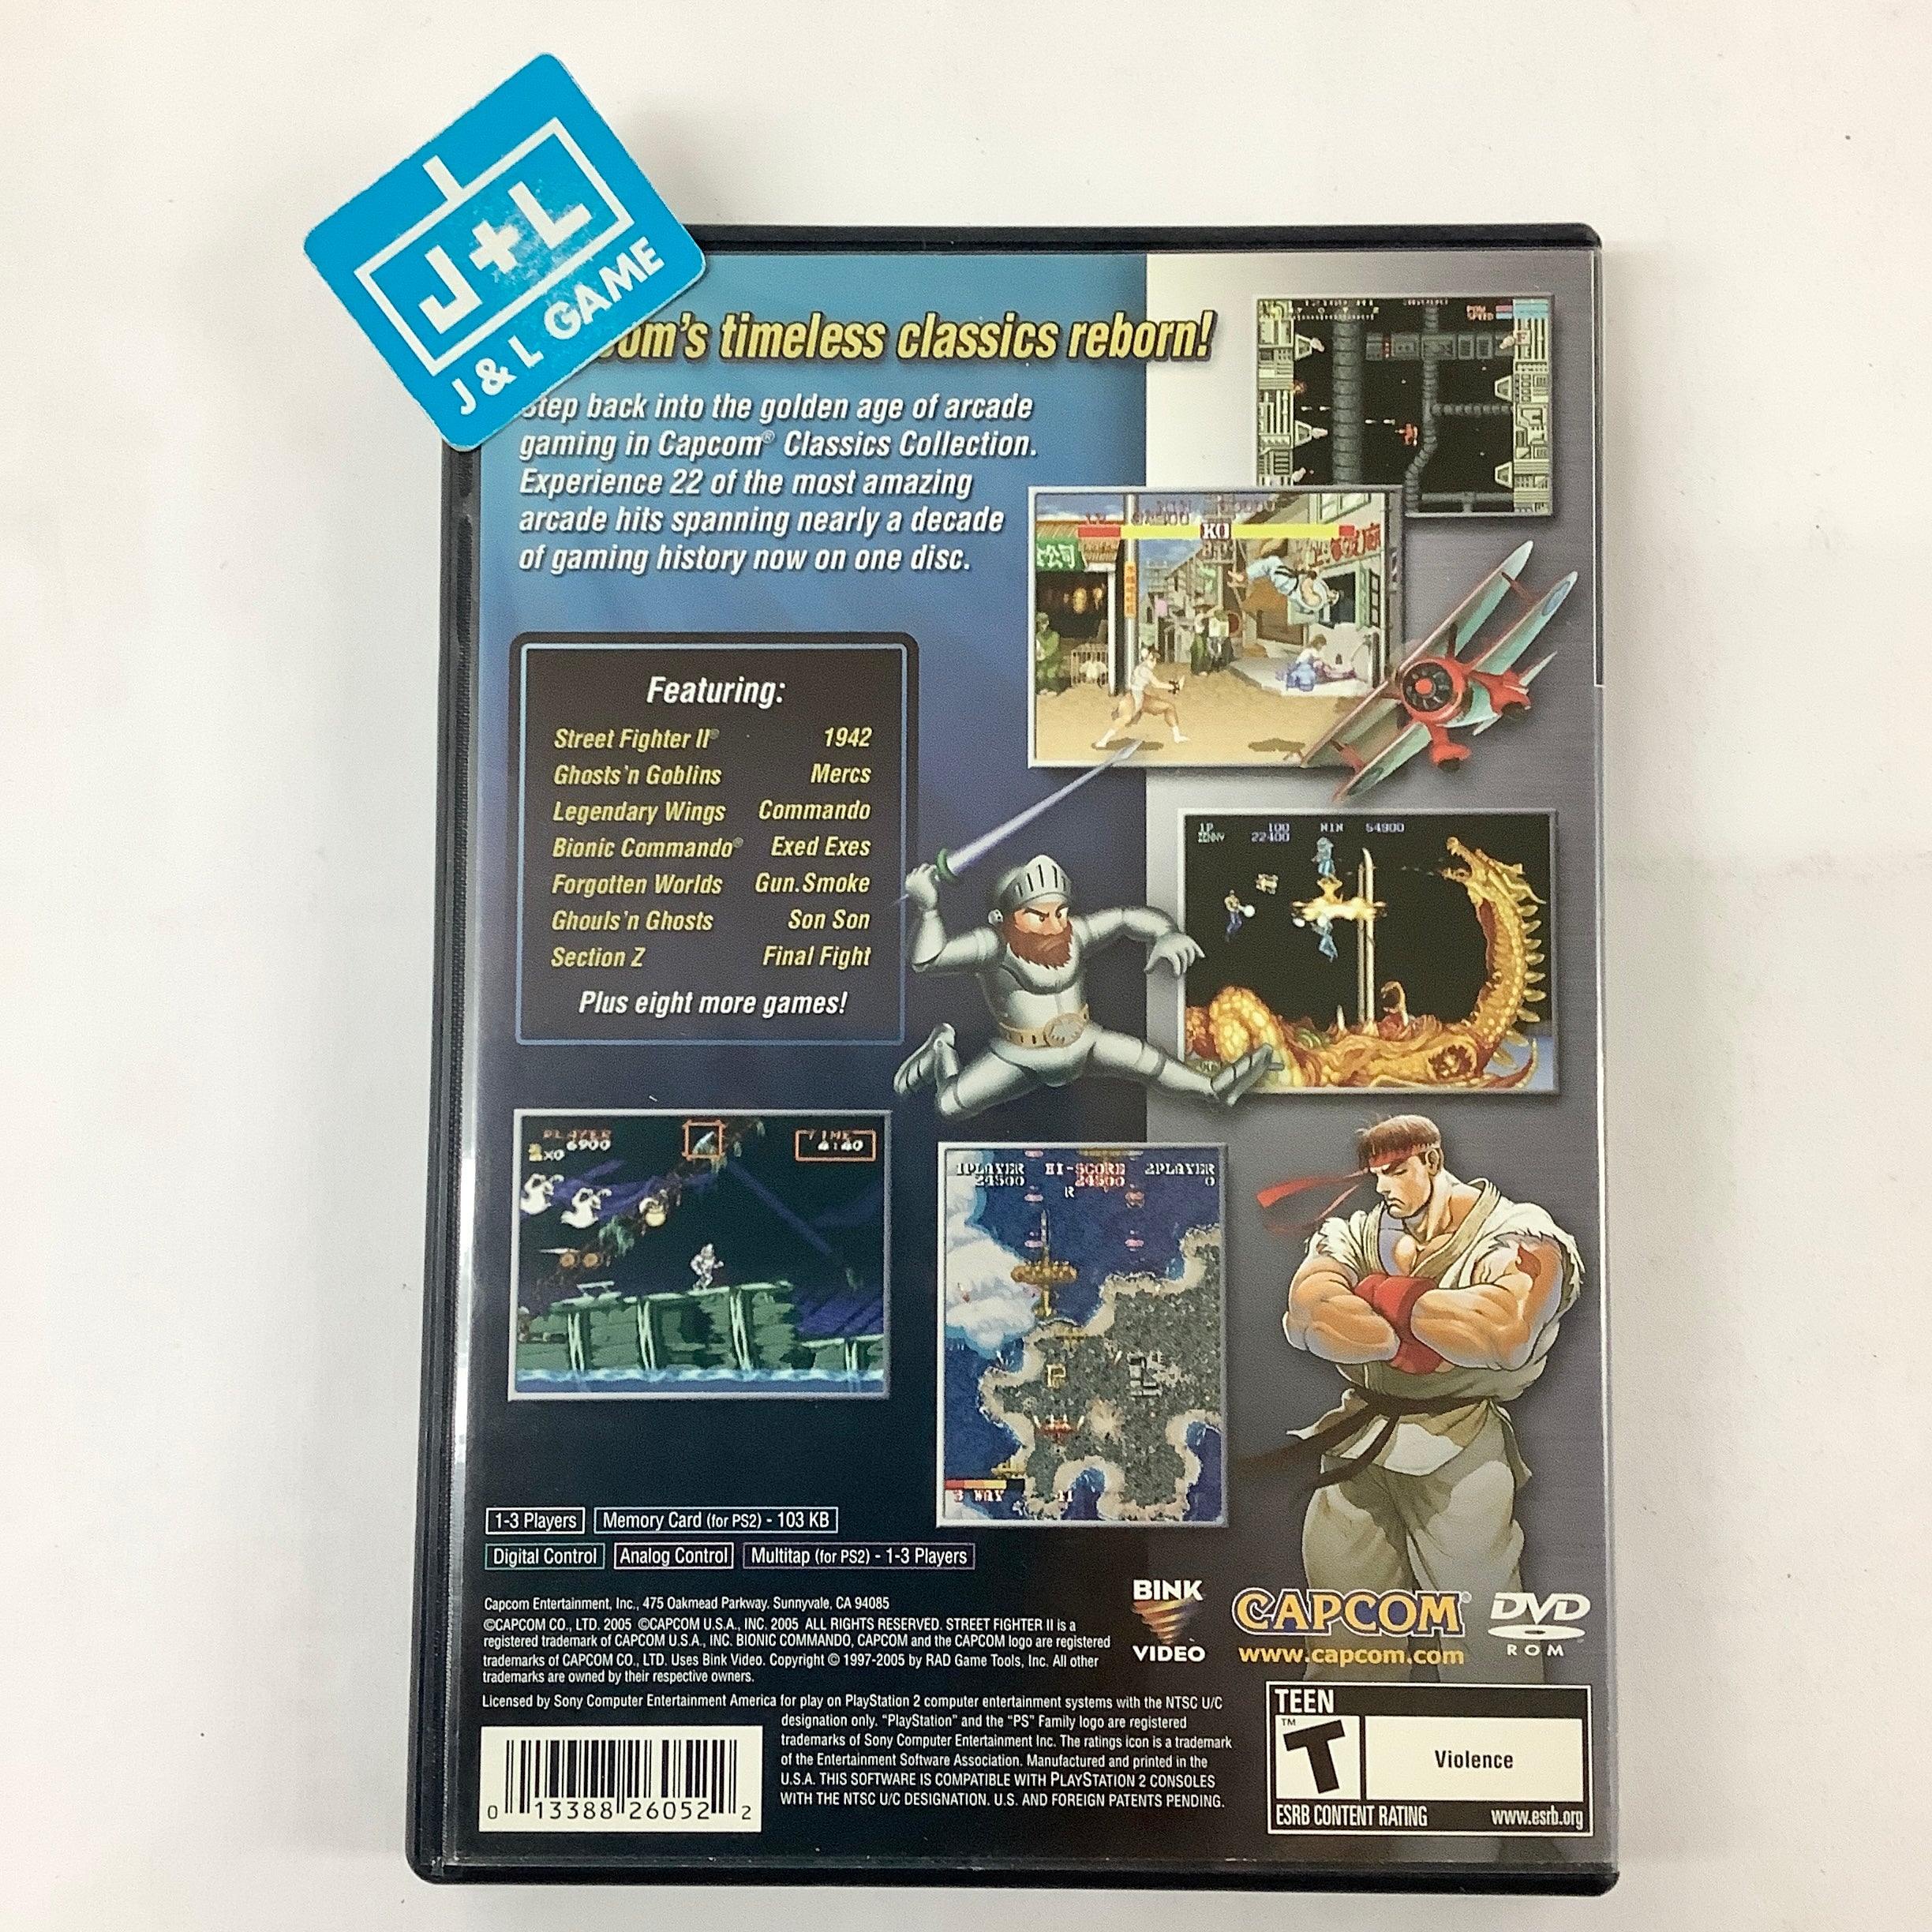 Capcom Classics Collection - (PS2) PlayStation 2 [Pre-Owned] Video Games Capcom   